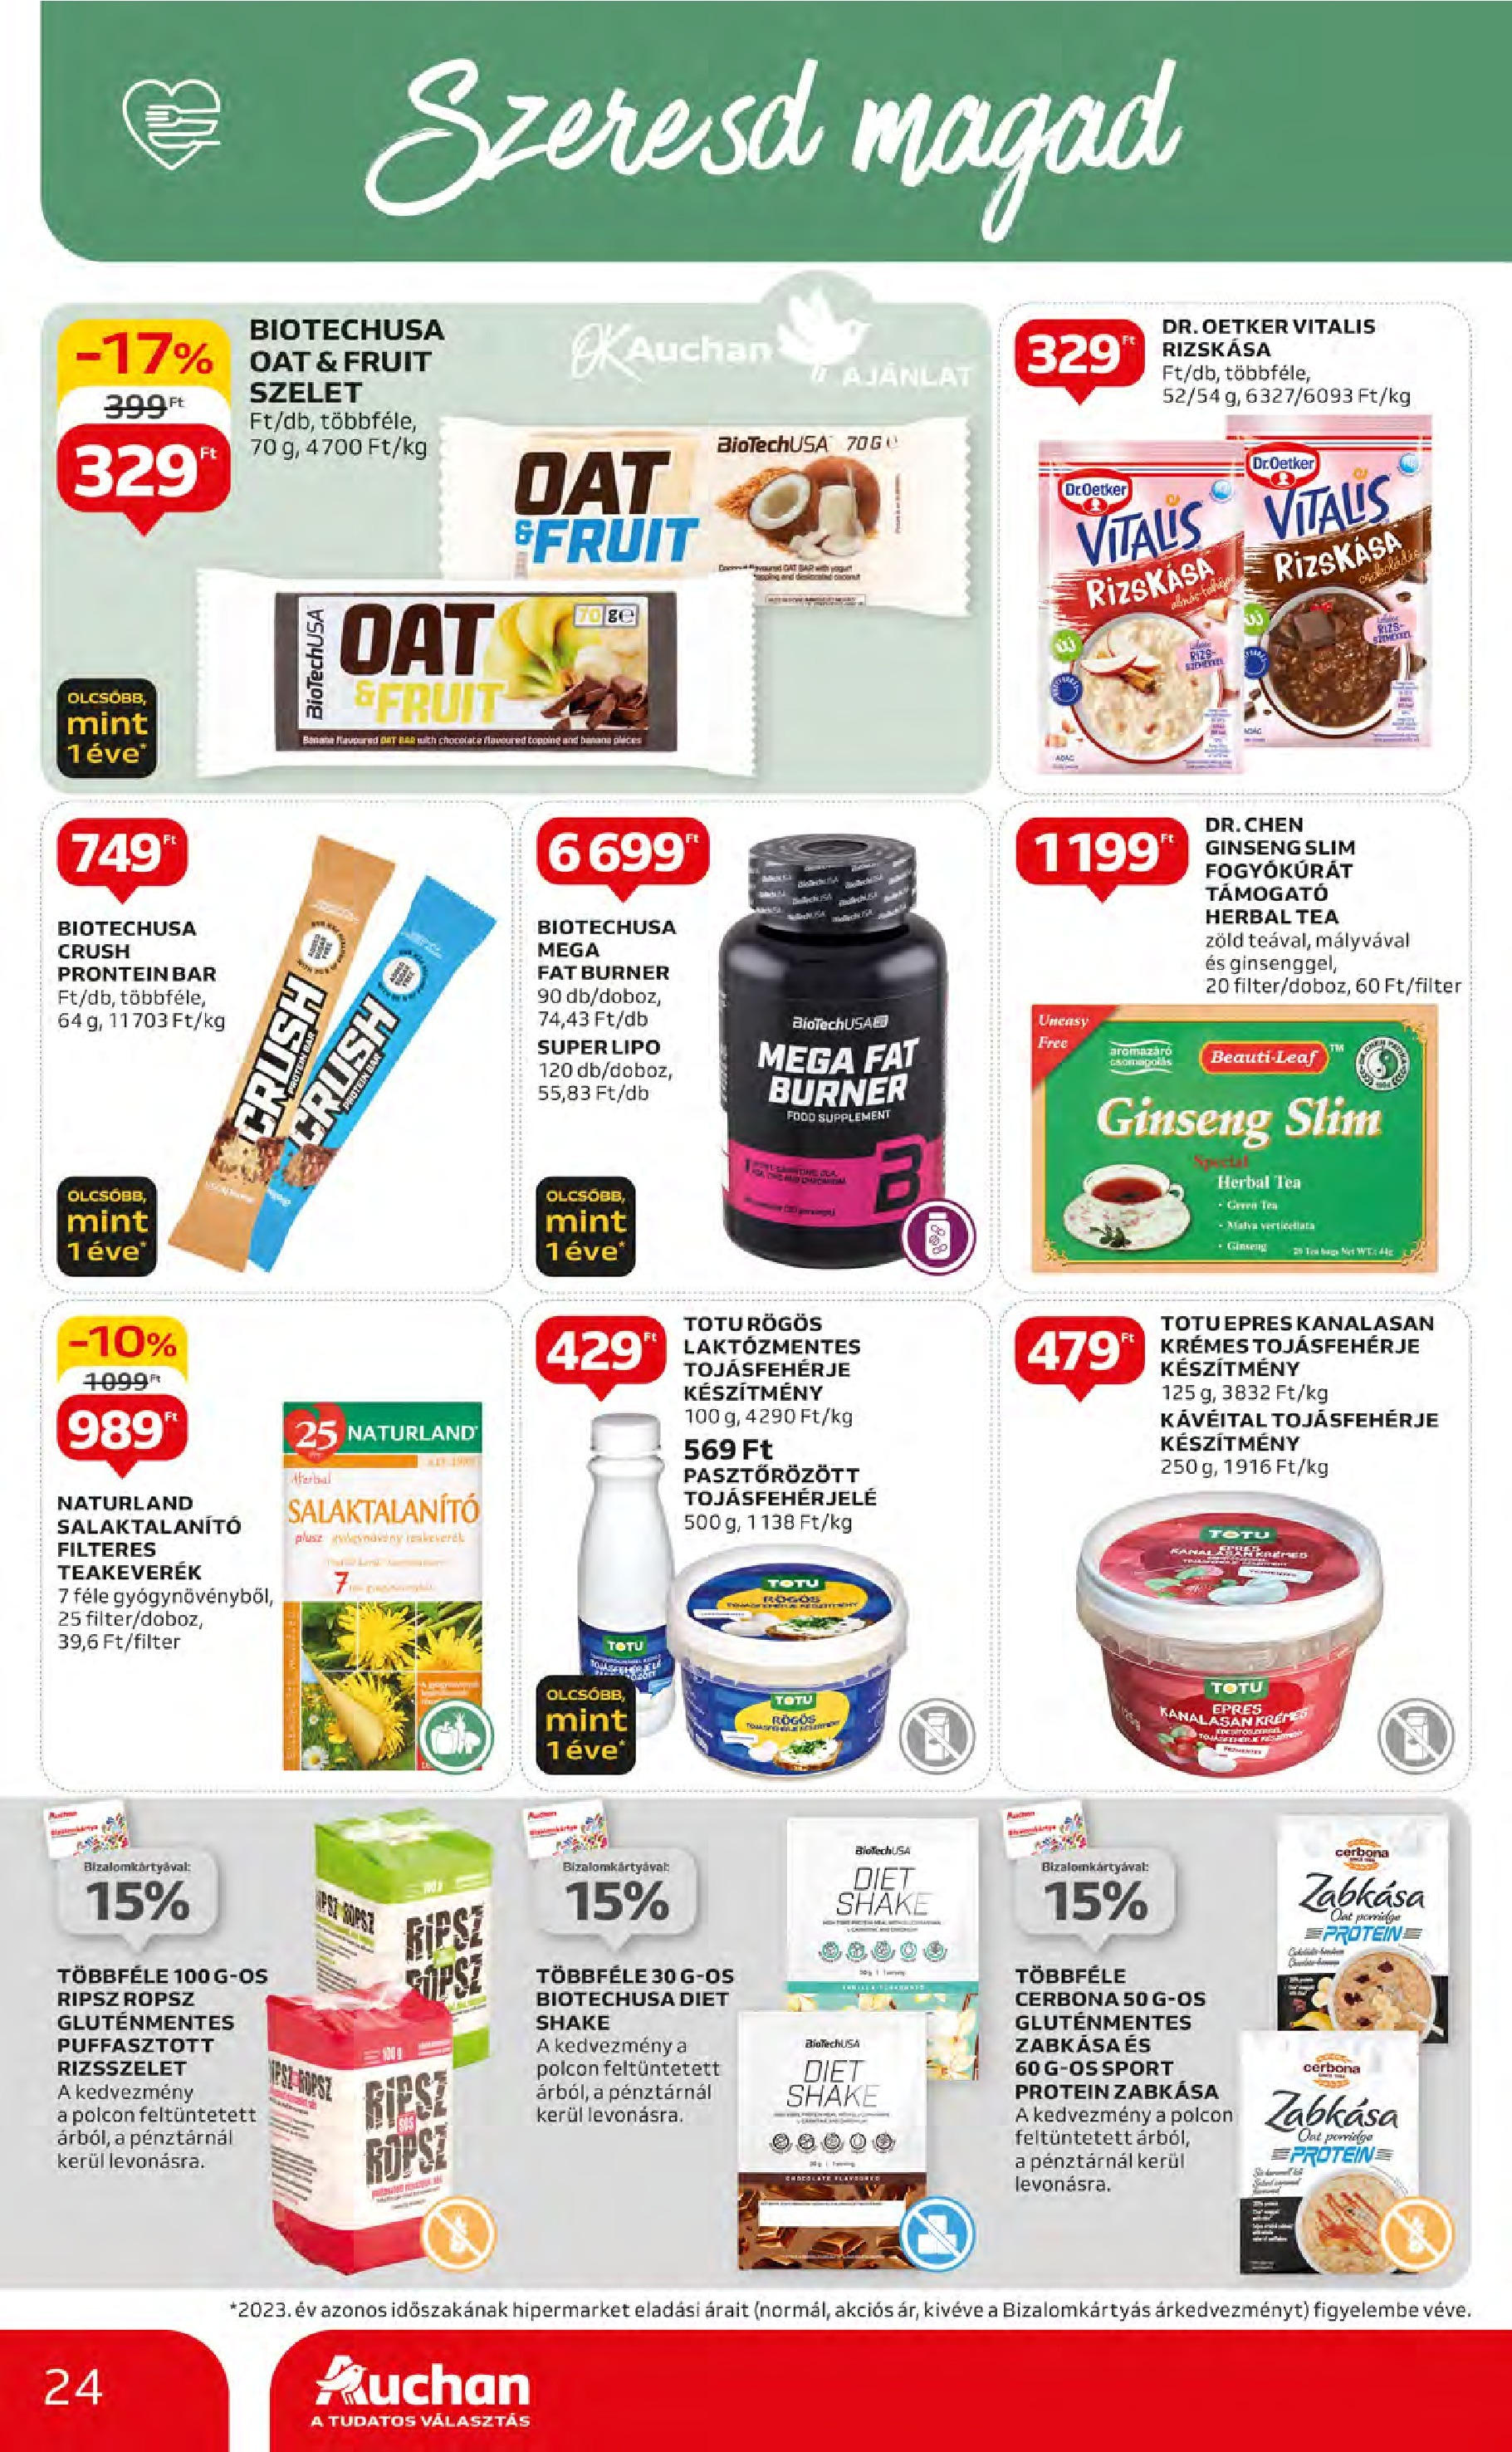 Auchan  Akciós újság - 2024.05.09. -tól/töl > akció, szórólap 🛍️ | Oldal: 24 | Termékek: Protein, Tojásfehérje, Tea, Gluténmentes